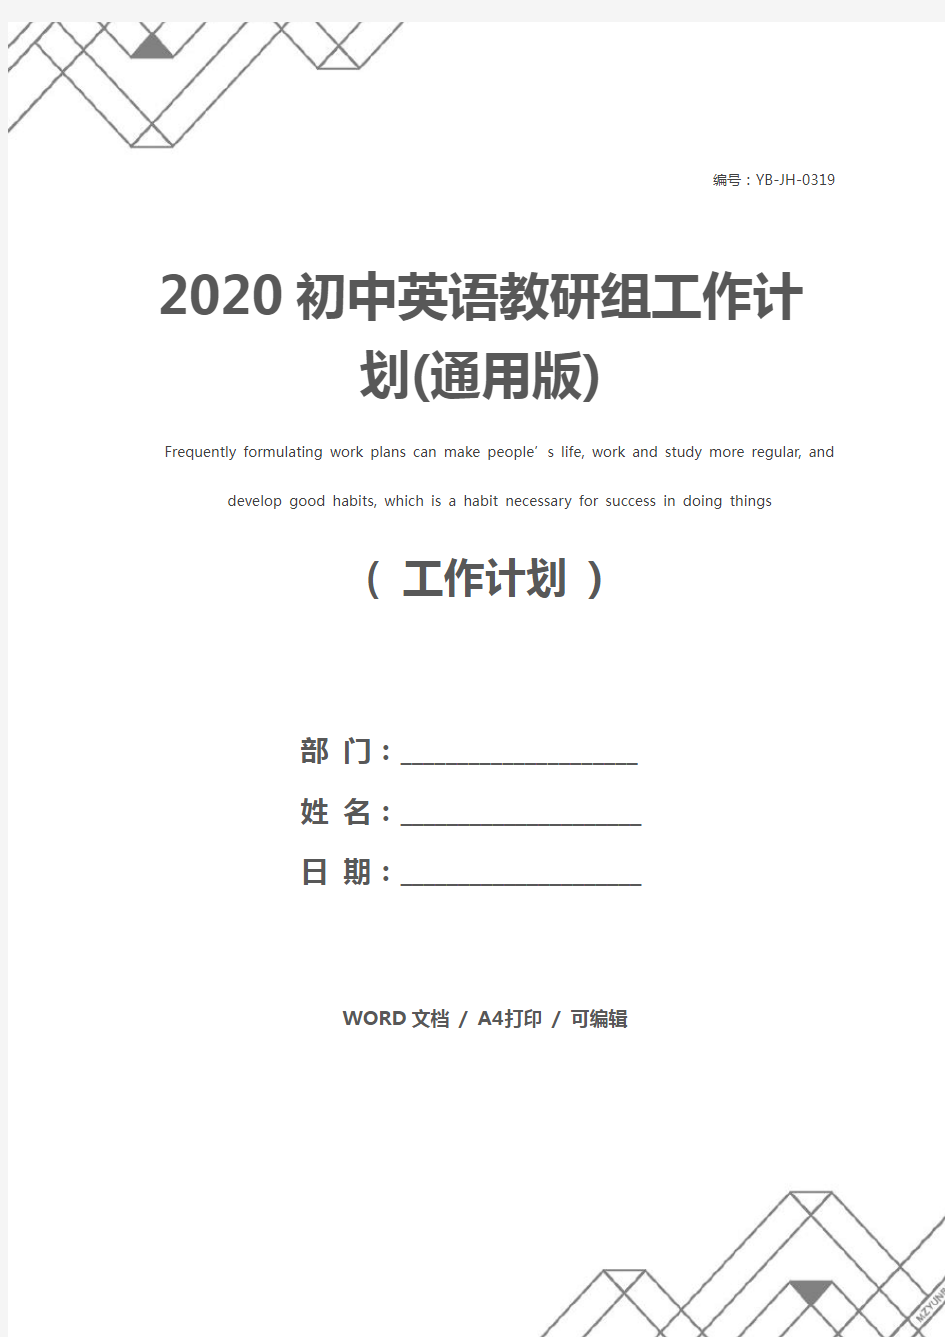 2020初中英语教研组工作计划(通用版)